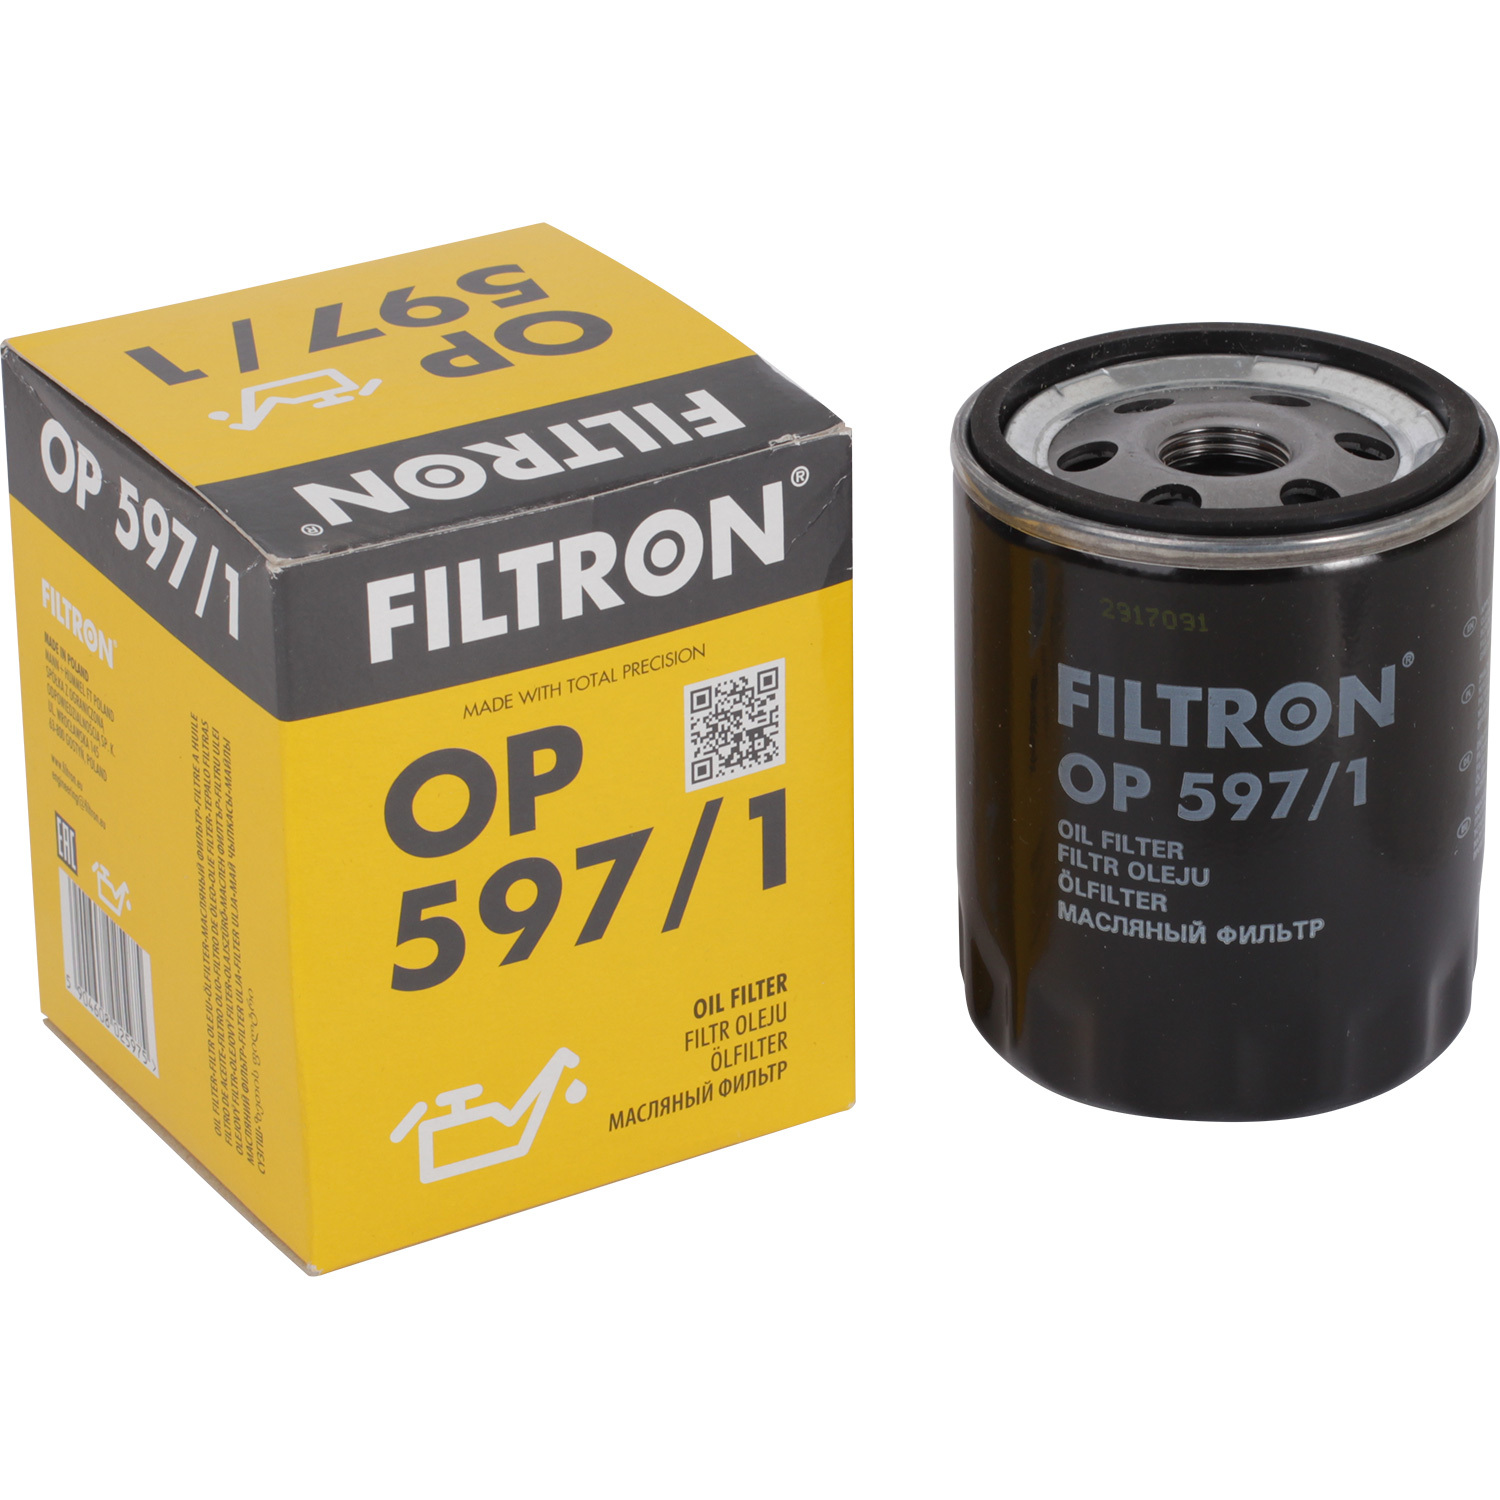 фильтры filtron фильтр масляный filtron op6291 Фильтры Filtron Фильтр масляный Filtron OP5971